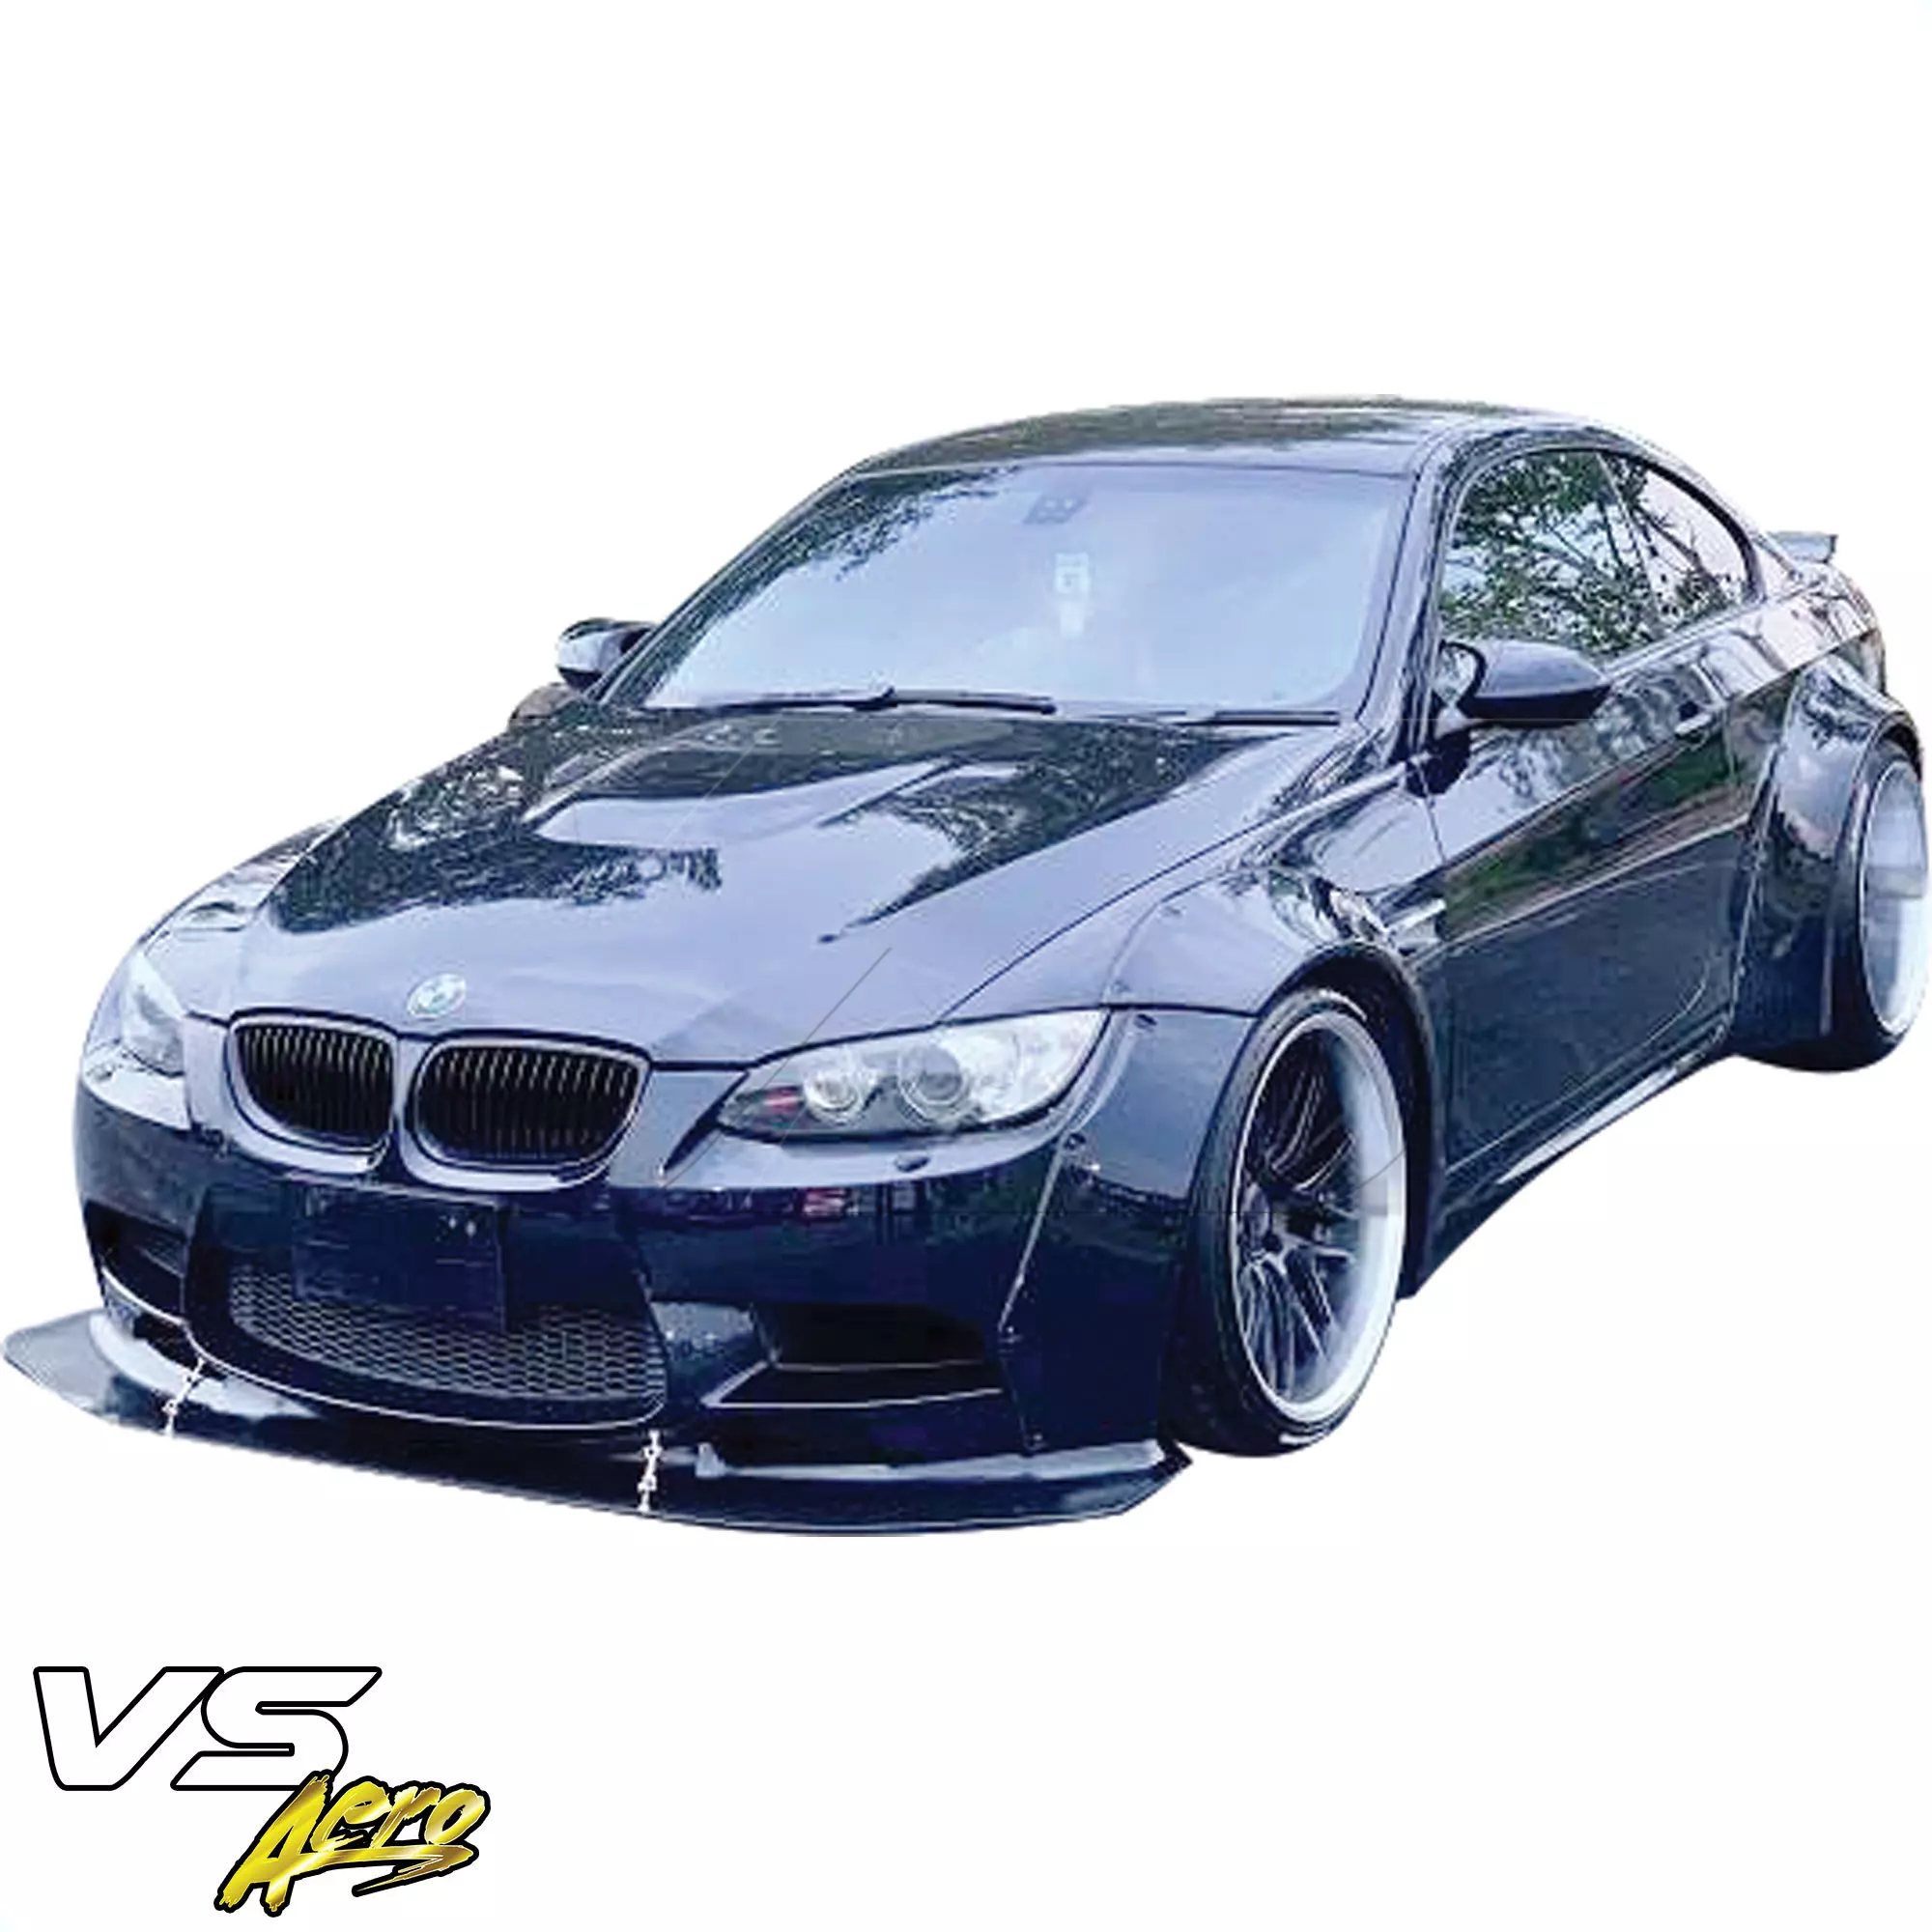 VSaero FRP LBPE Wide Body Kit > BMW M3 E92 2008-2013 > 2dr - Image 19